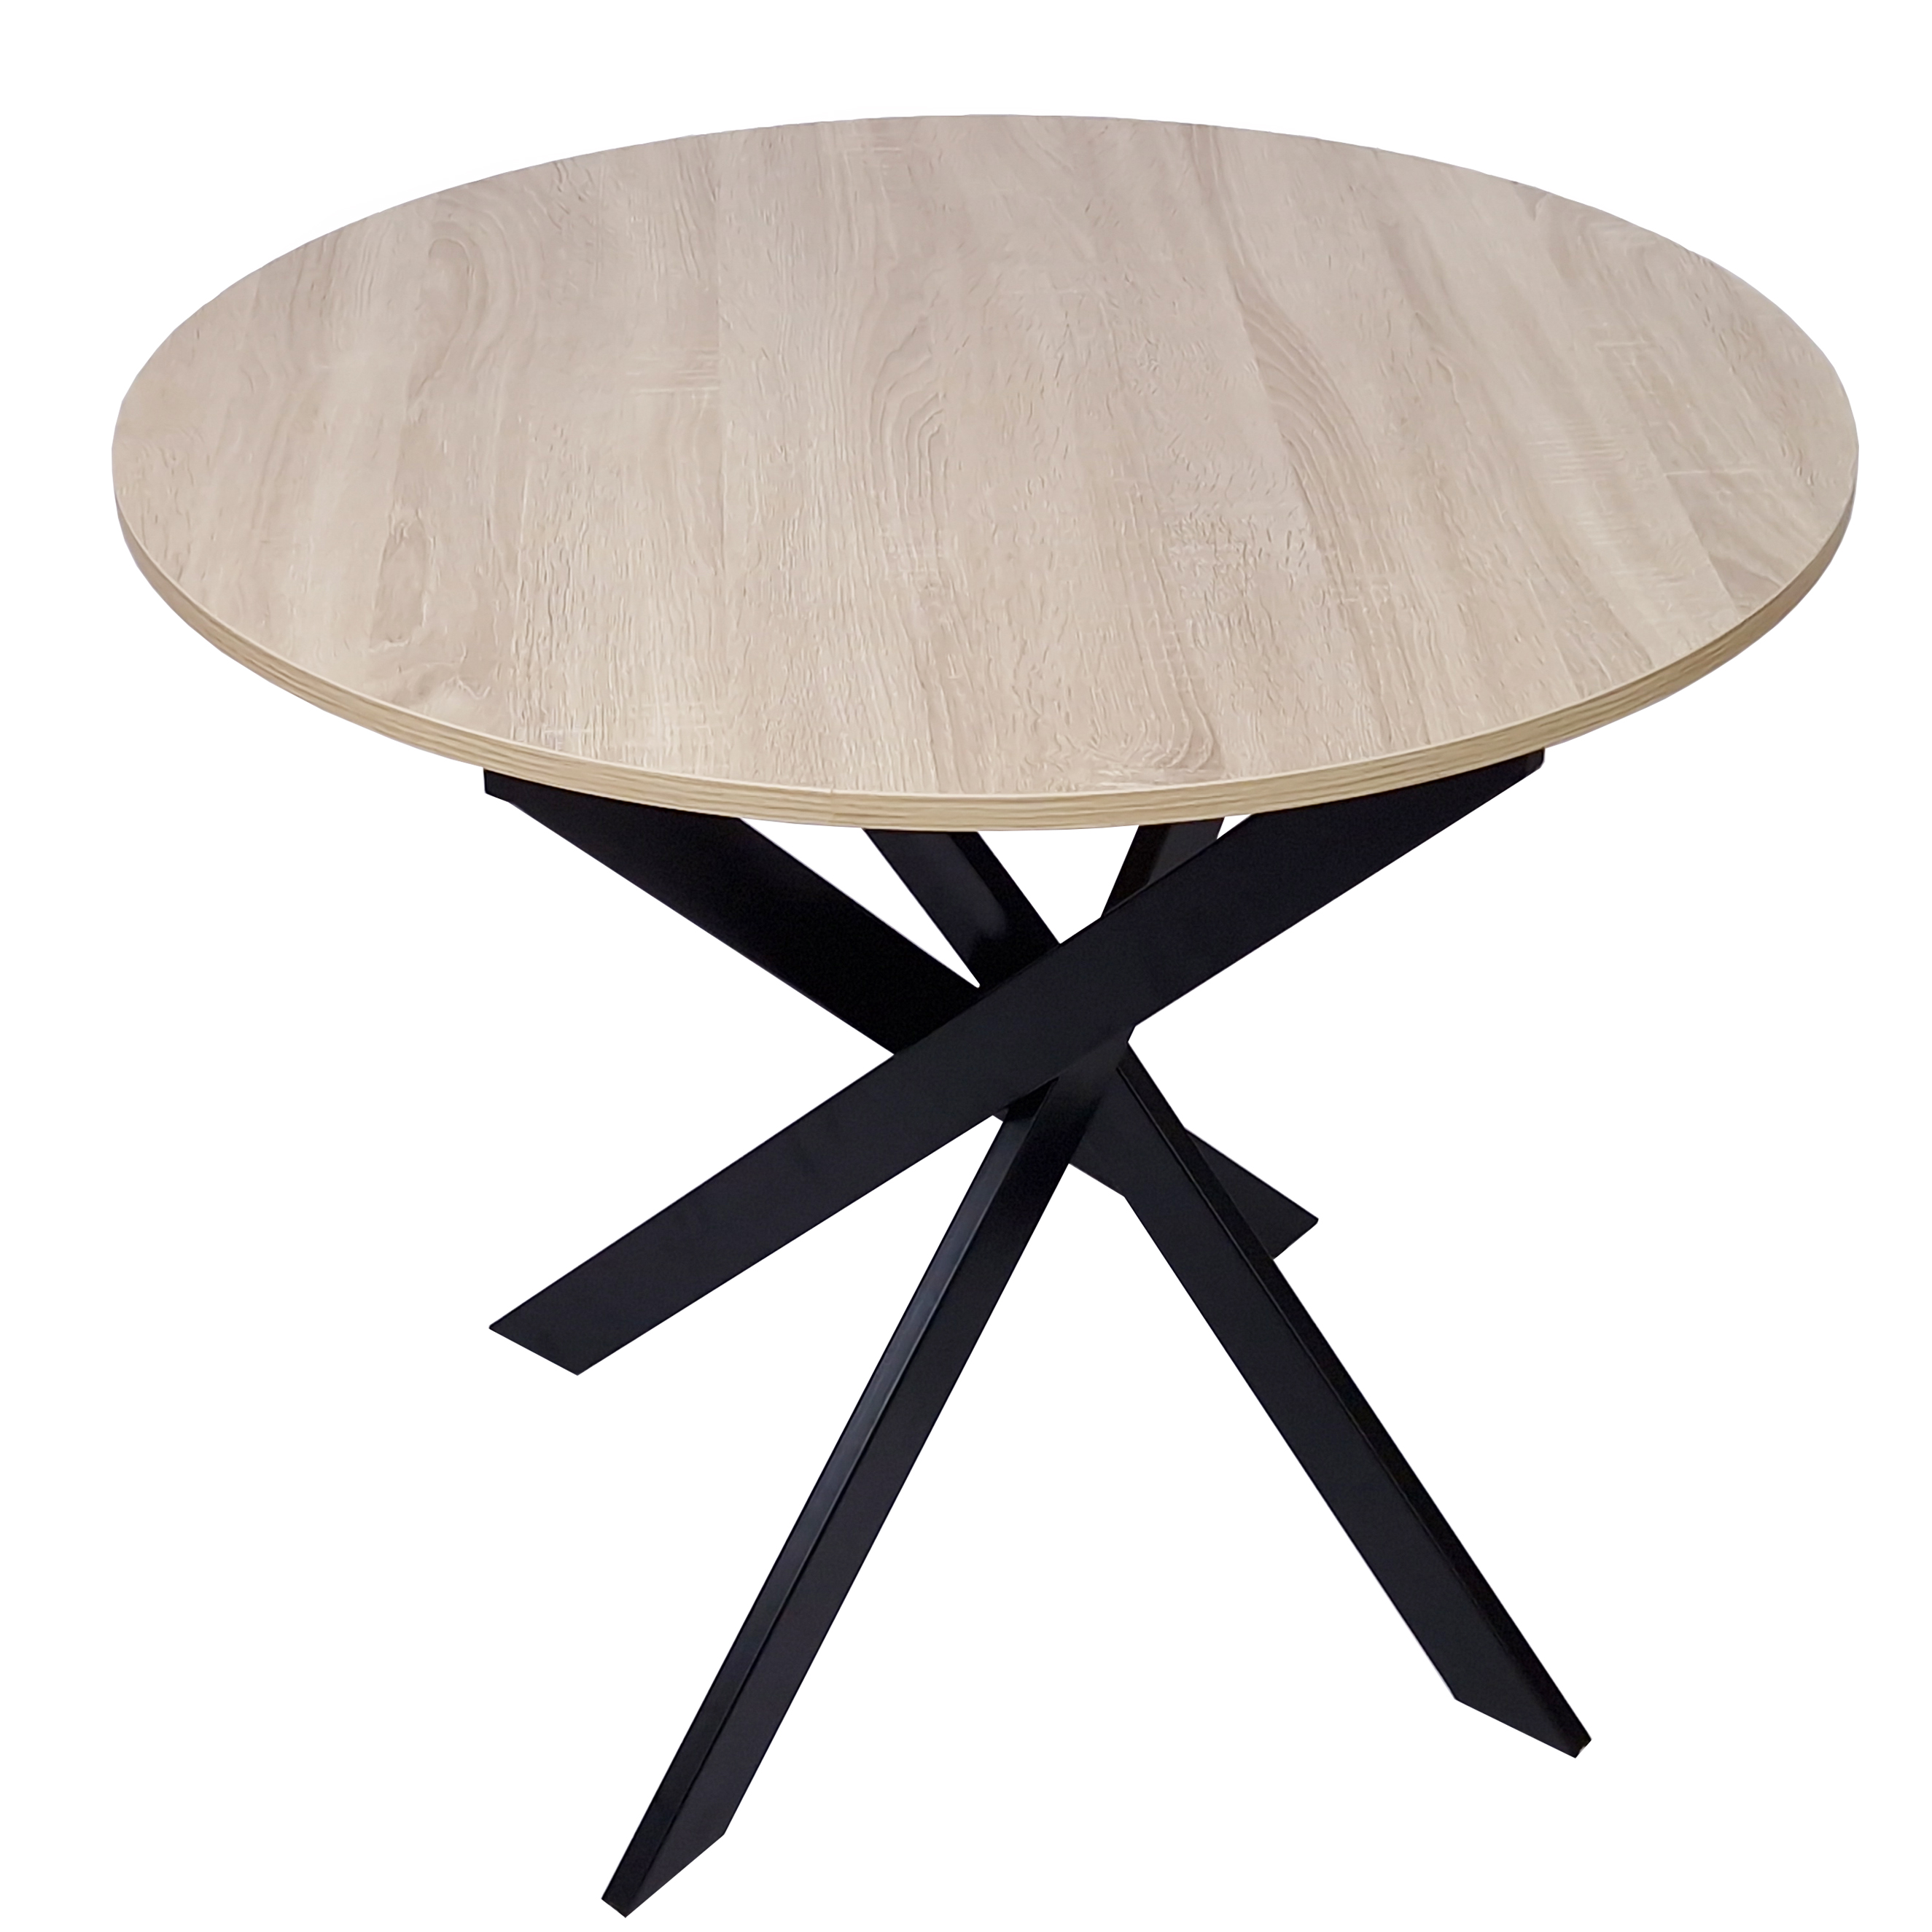 Table à manger ronde fixe, salon, Modèle ZEN,  couleur chêne, Pieds métalliques, mesure 90x90x77cm de haut.